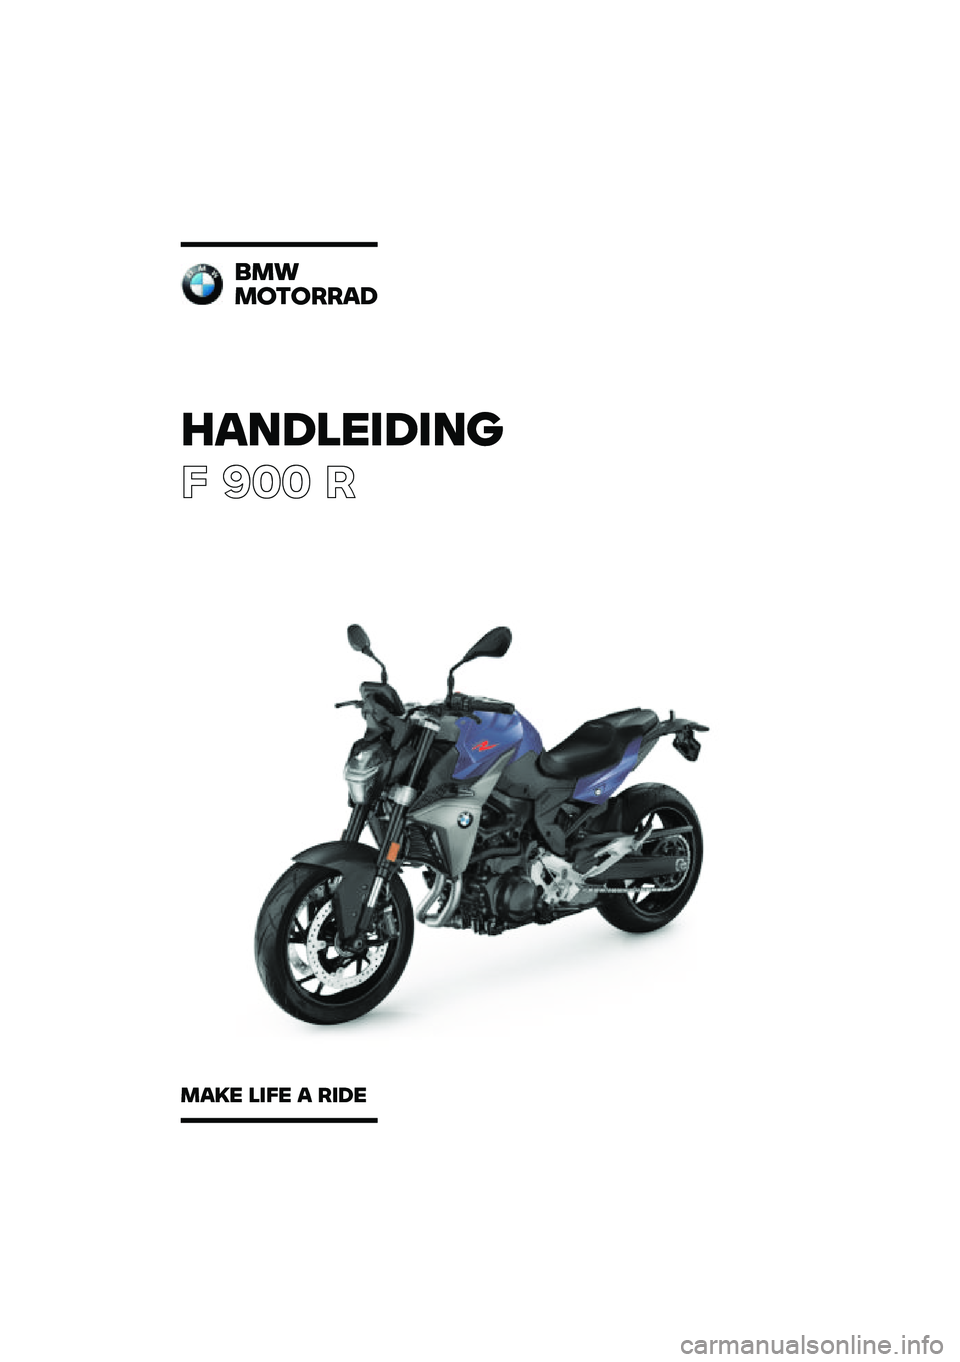 BMW MOTORRAD F 900 R 2020  Handleiding (in Dutch) �������\b��\b��	
� ��� �
�
��\f
��
��
����
���� ��\b�� � ��\b�� 